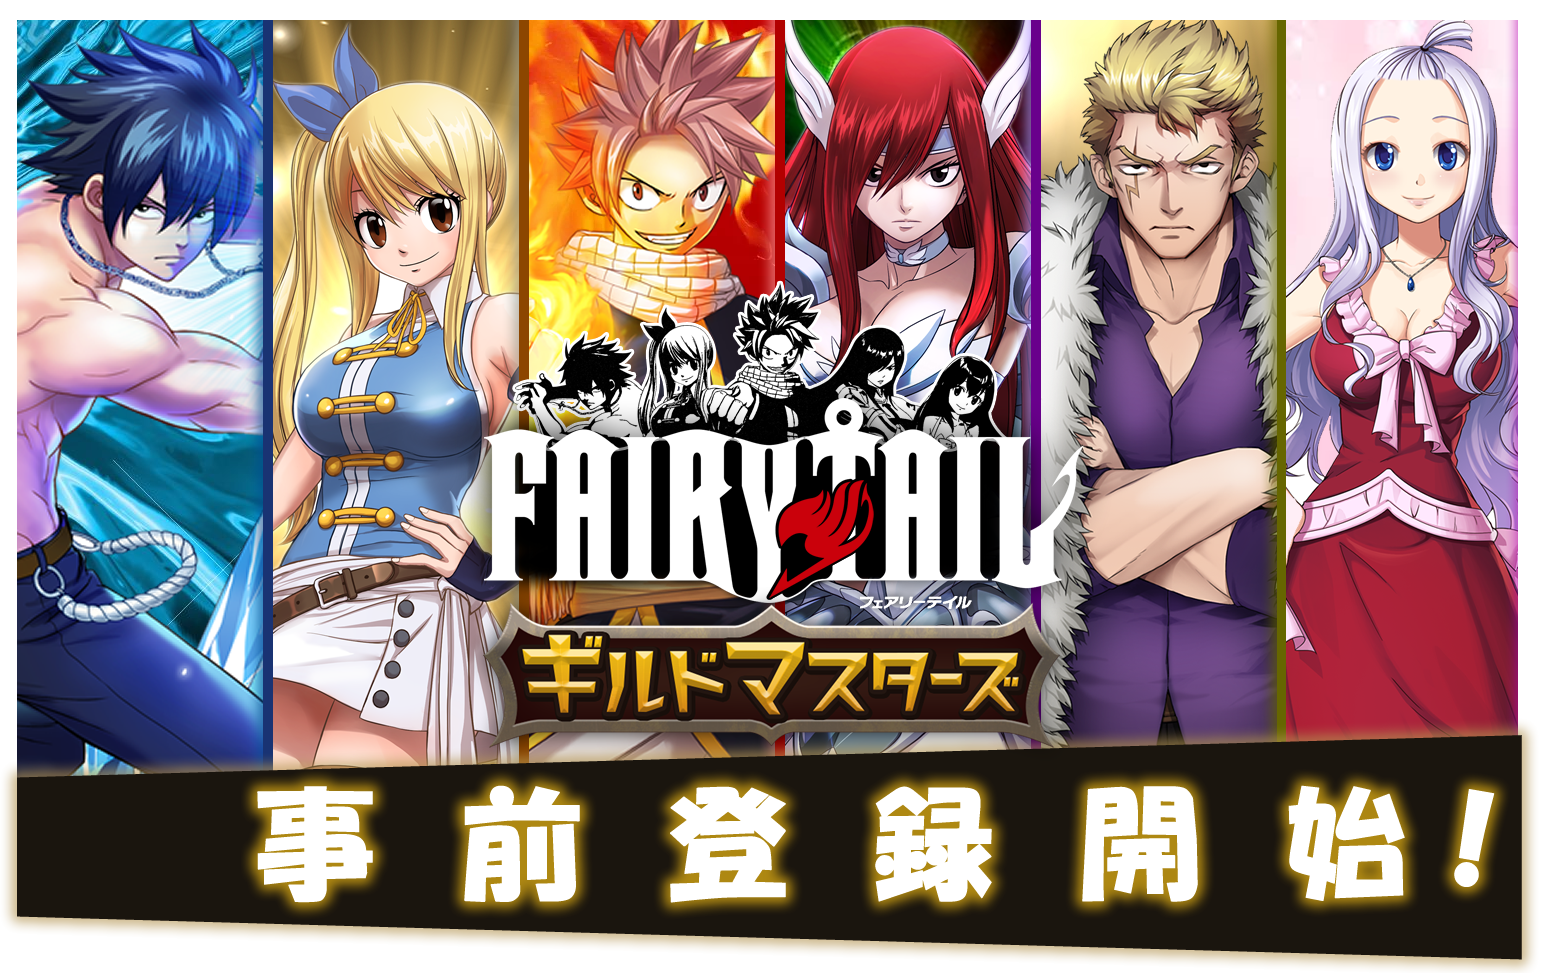 新作スマートフォンゲーム Fairy Tail ギルドマスターズ 4月1日 木 より事前登録開始 Noa Tec株式会社のプレスリリース